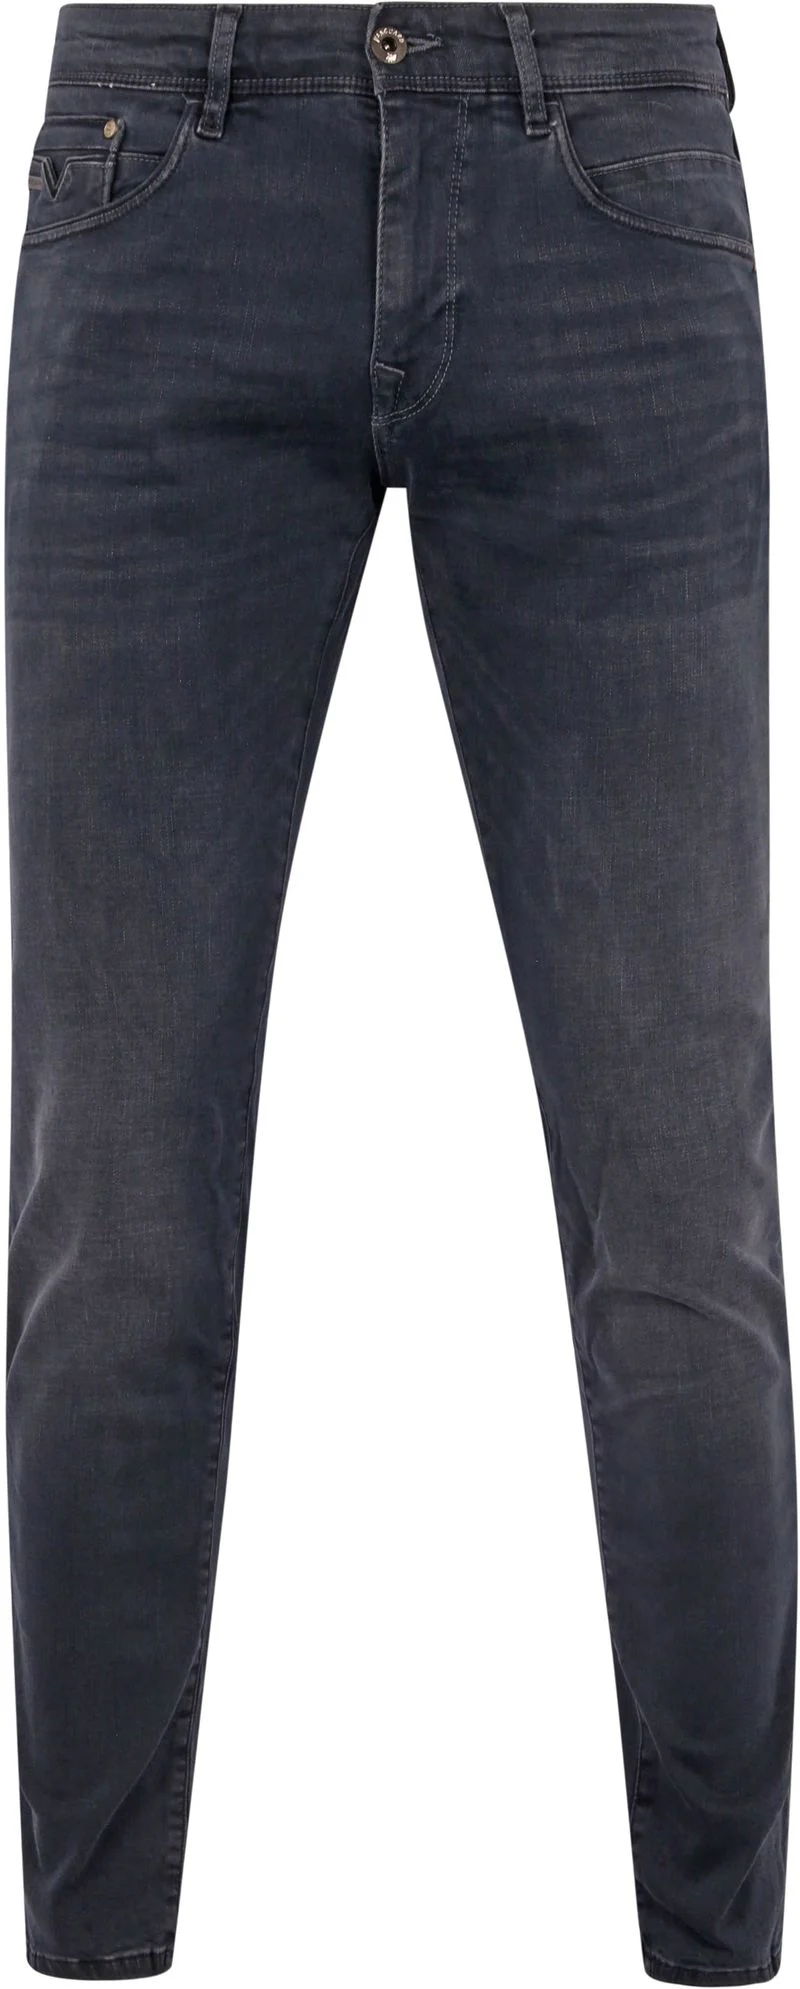 Vanguard Jeans V12 Rider Anthrazit ODB - Größe W 31 - L 30 günstig online kaufen